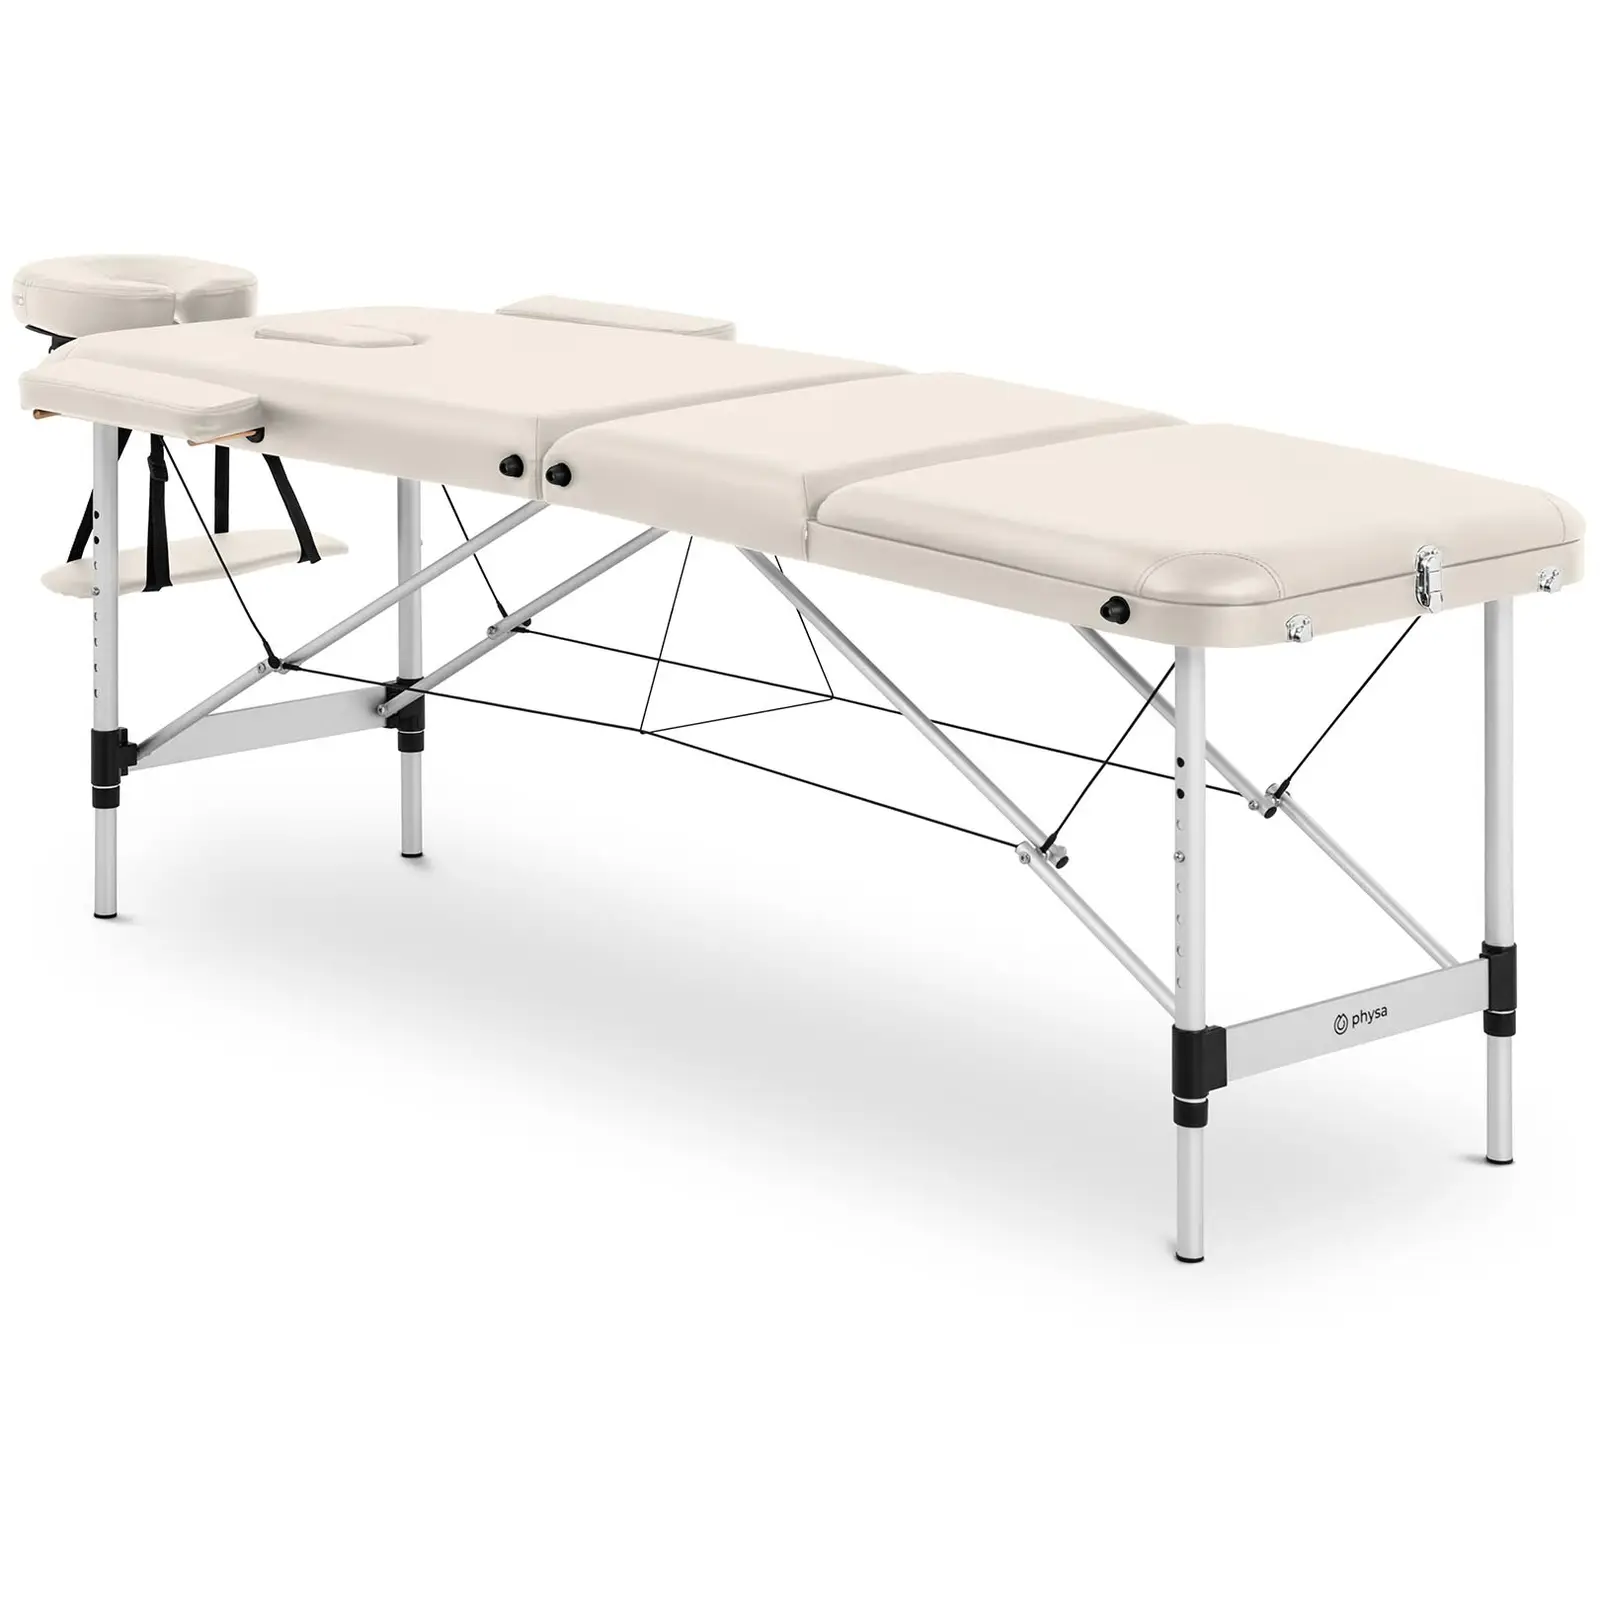 Składany stół do masażu - 185 x 60 x 60-81 cm - 180 kg - beżowy